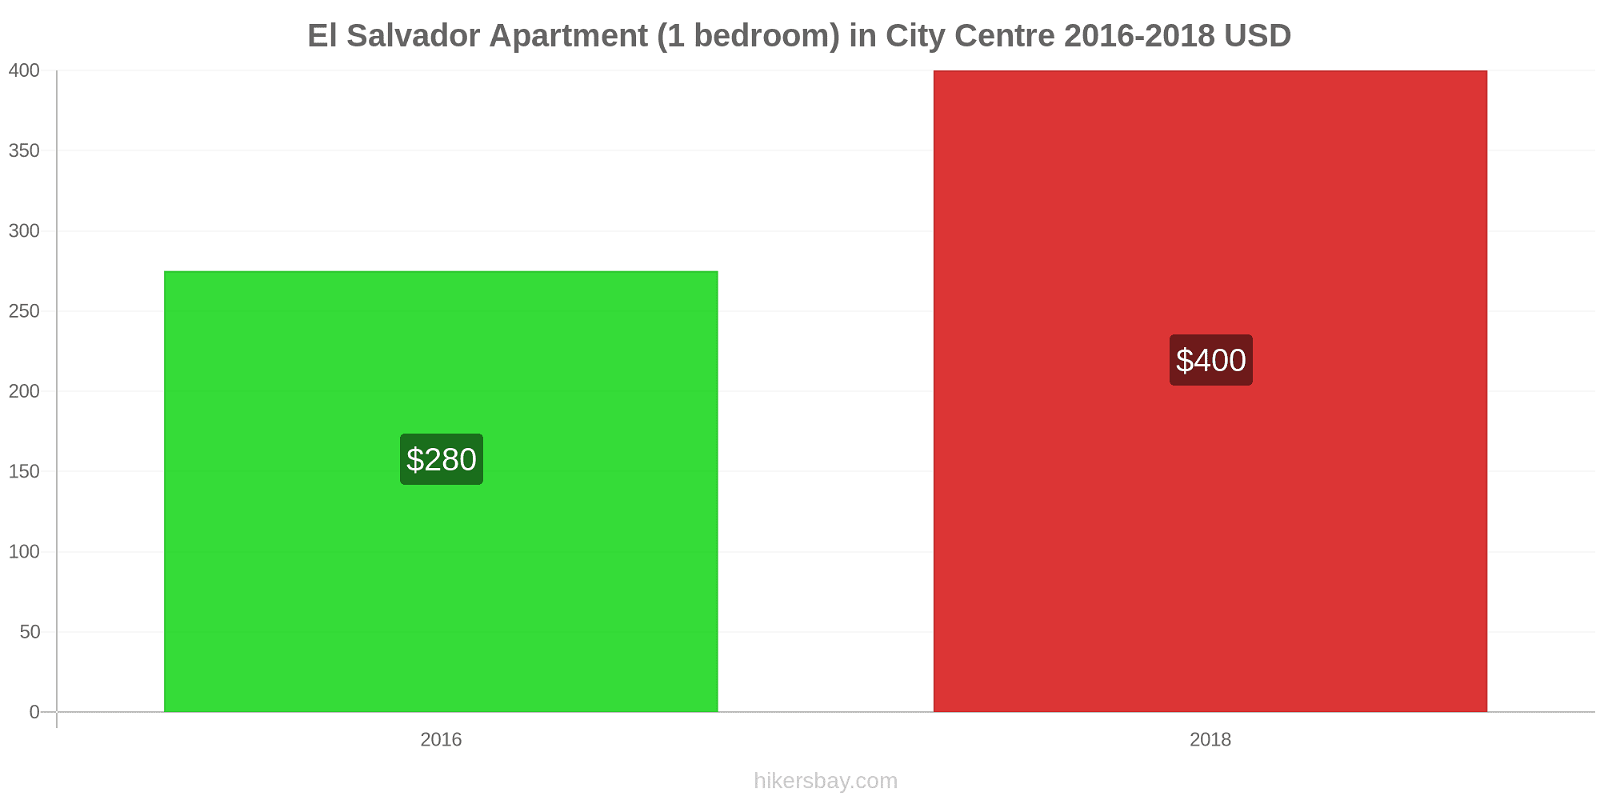 El Salvador price changes Apartment (1 bedroom) in City Centre hikersbay.com